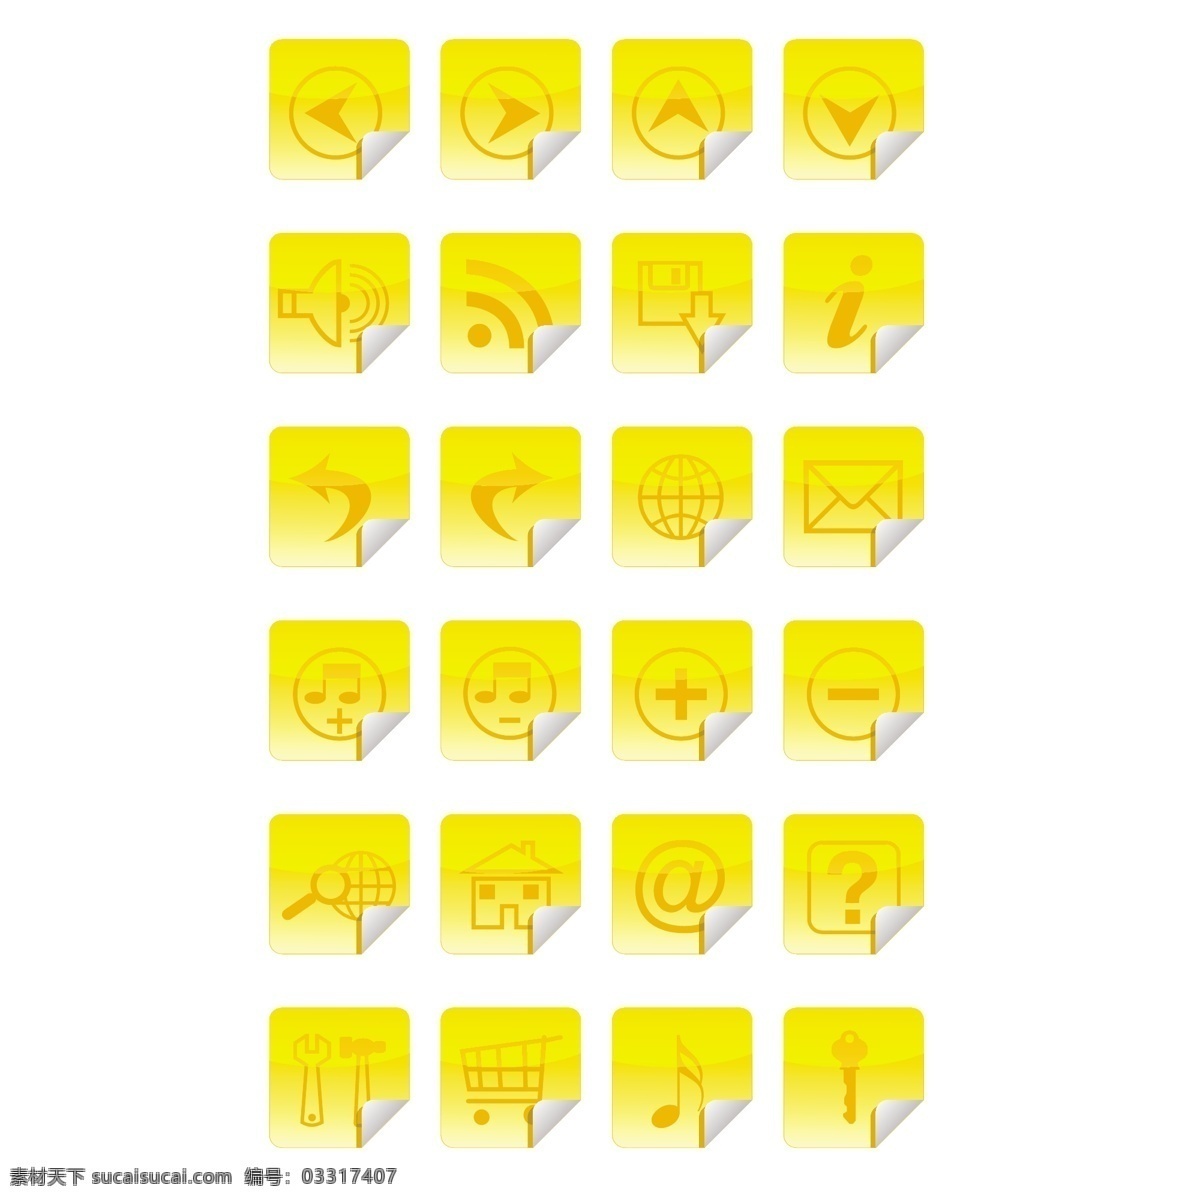 黄色图标贴纸 音乐 箭头 图标 家庭 贴纸 互联网 商店 邮件 信件 问题 声音 信息 黄 家庭图标 工具 邮件图标 音乐图标 白色